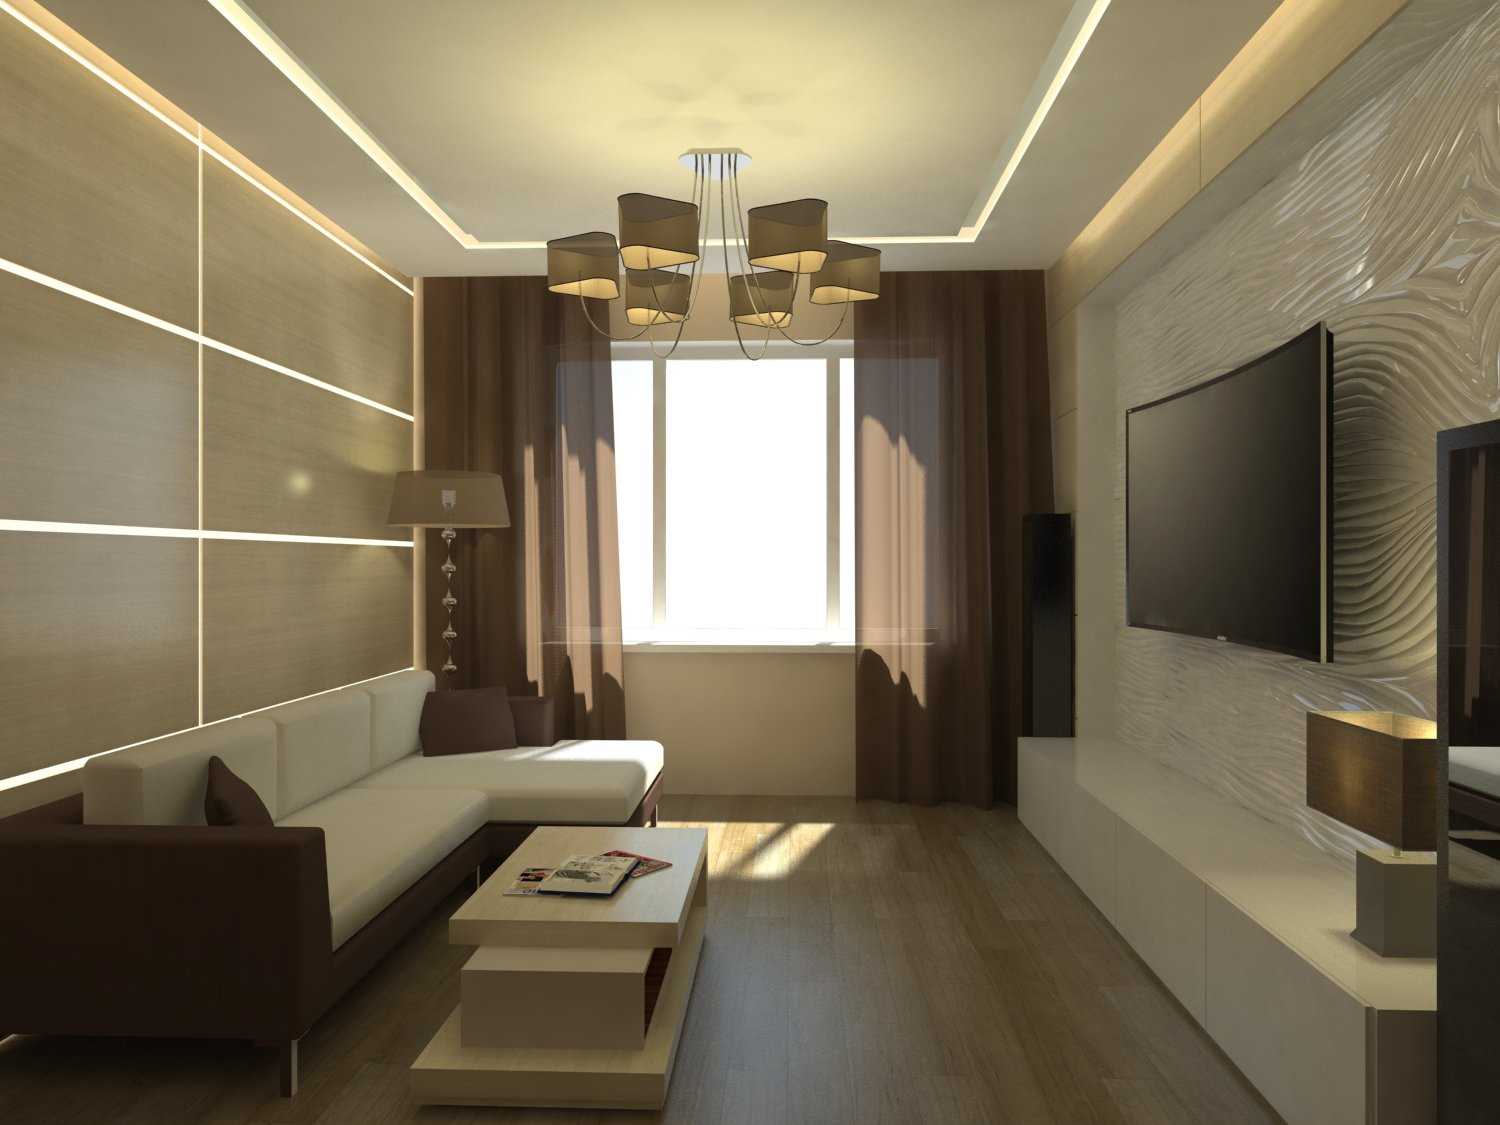 idée d'un design lumineux d'un salon dans un style moderne